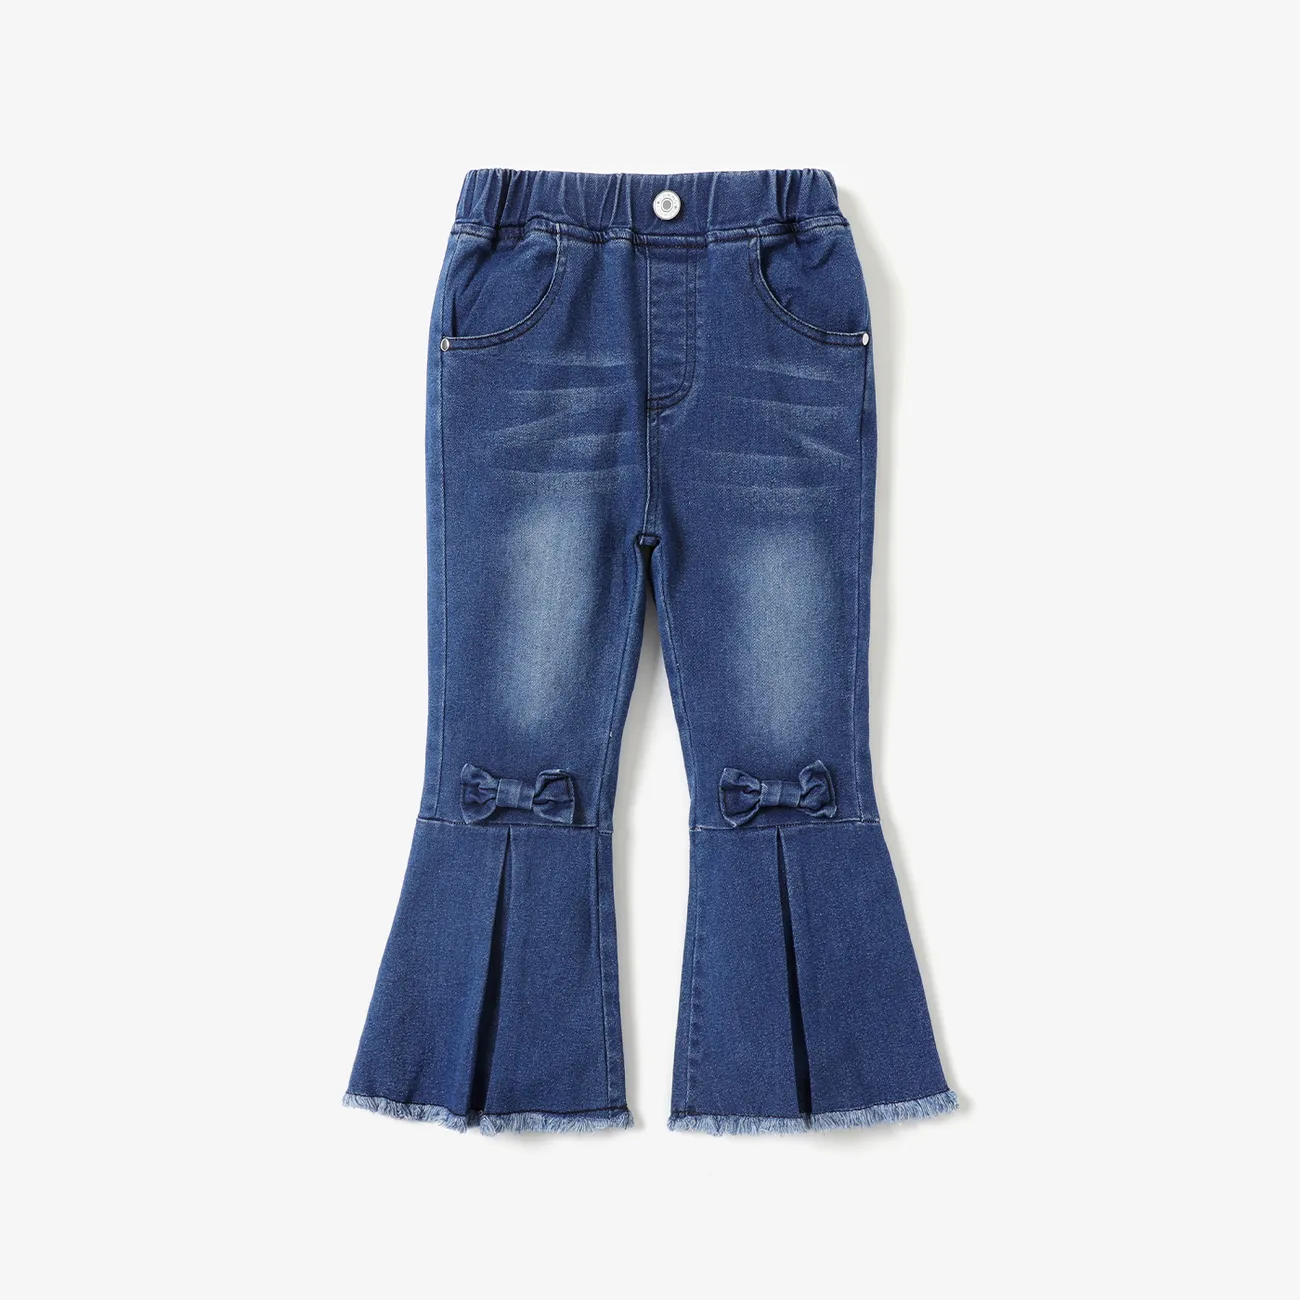 Toddler Girl Denim Bow Decor Bellbottom Blue Jeans Pants Blue big image 1